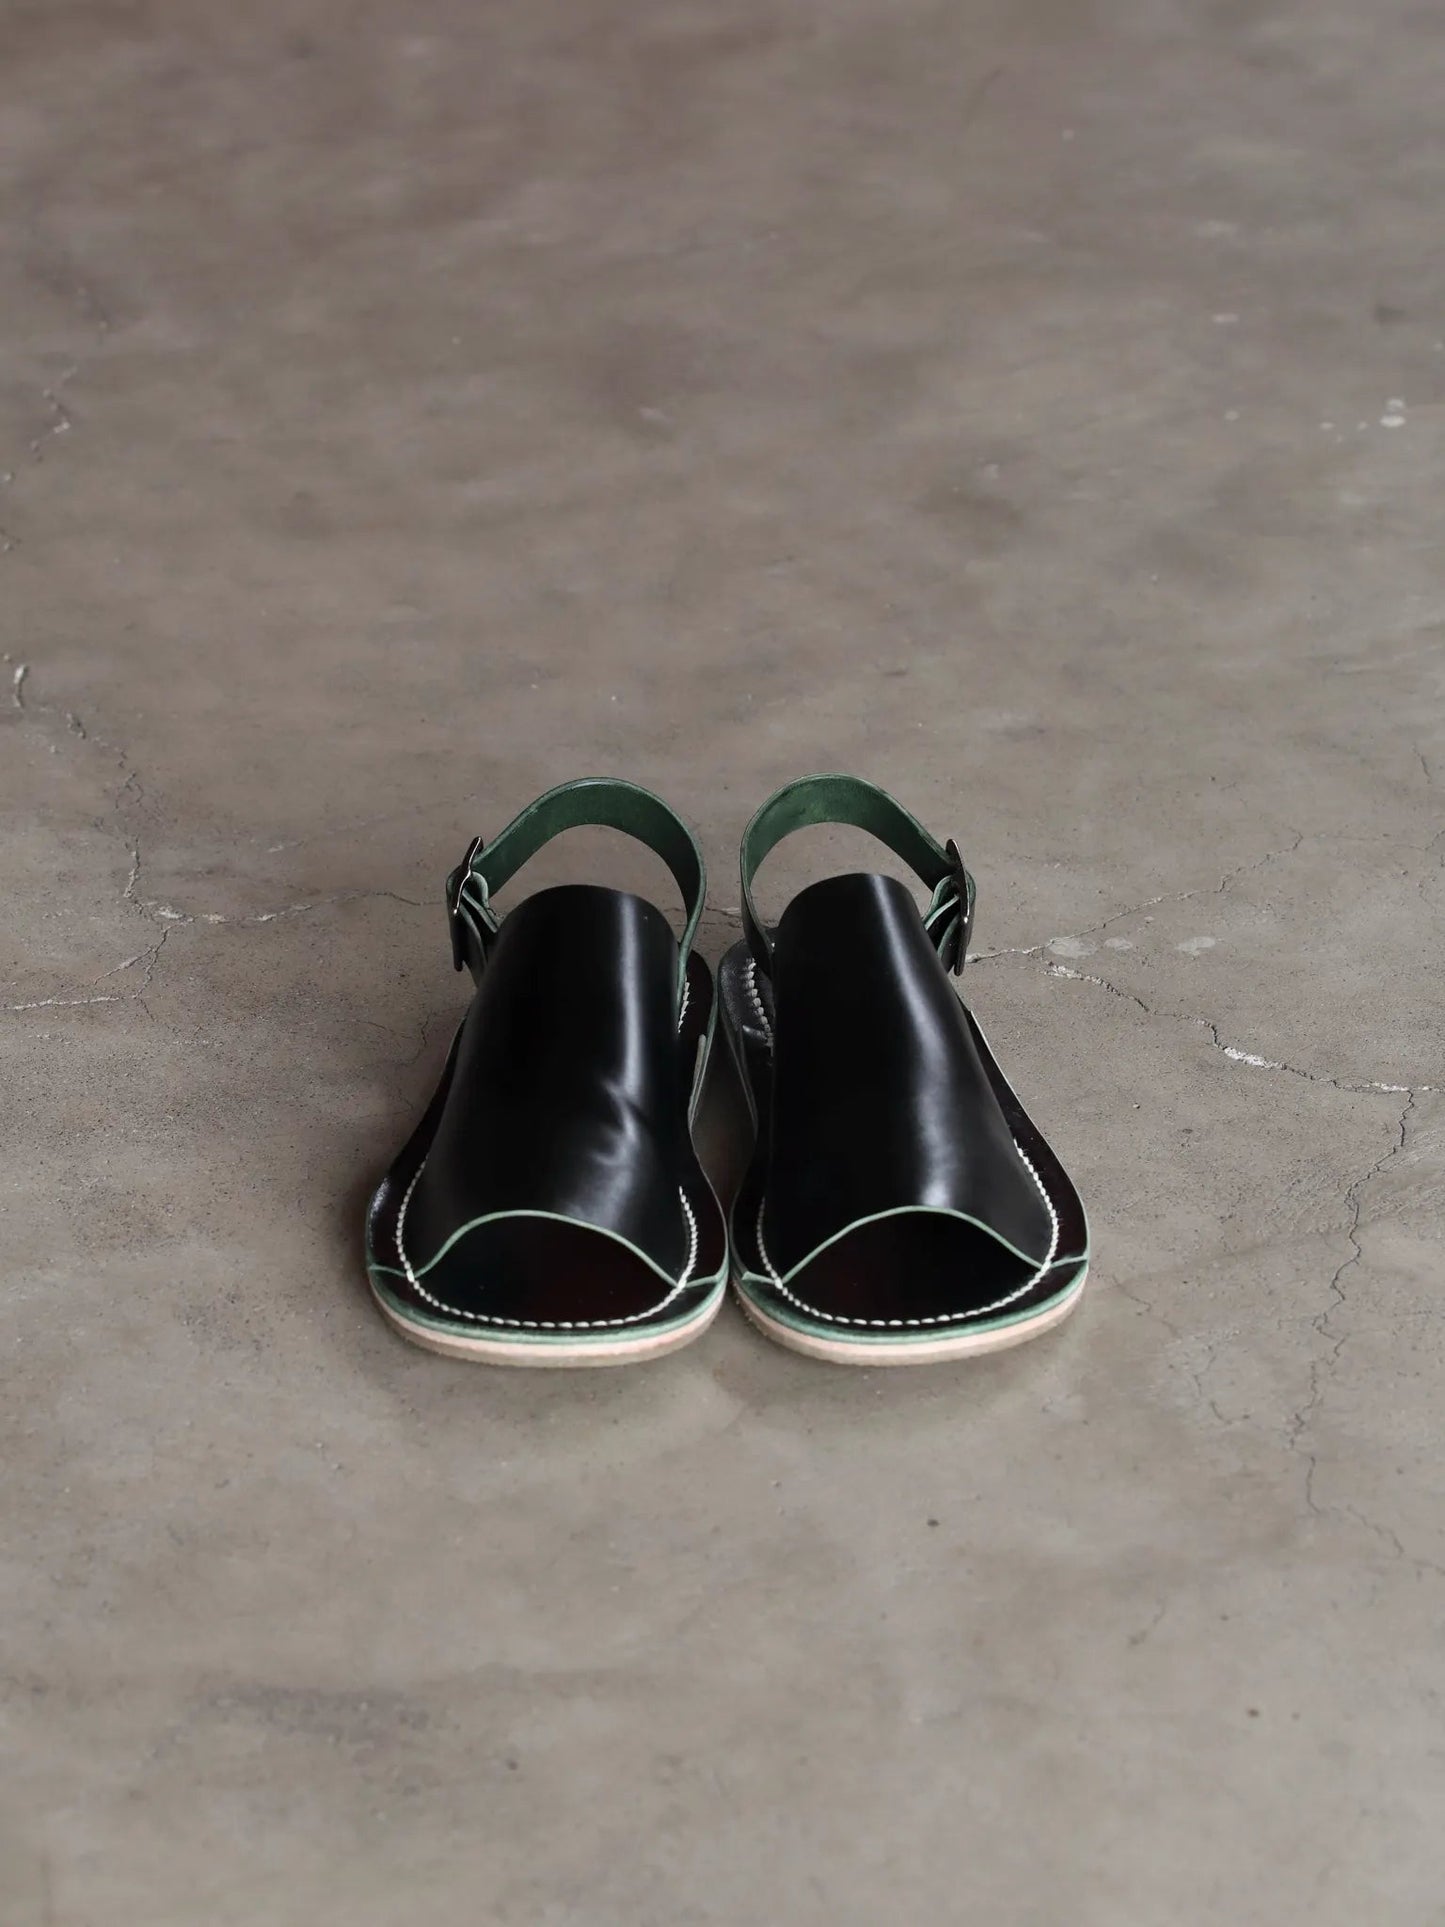 petrosolaum-bb-sandals-dark-green-black-2